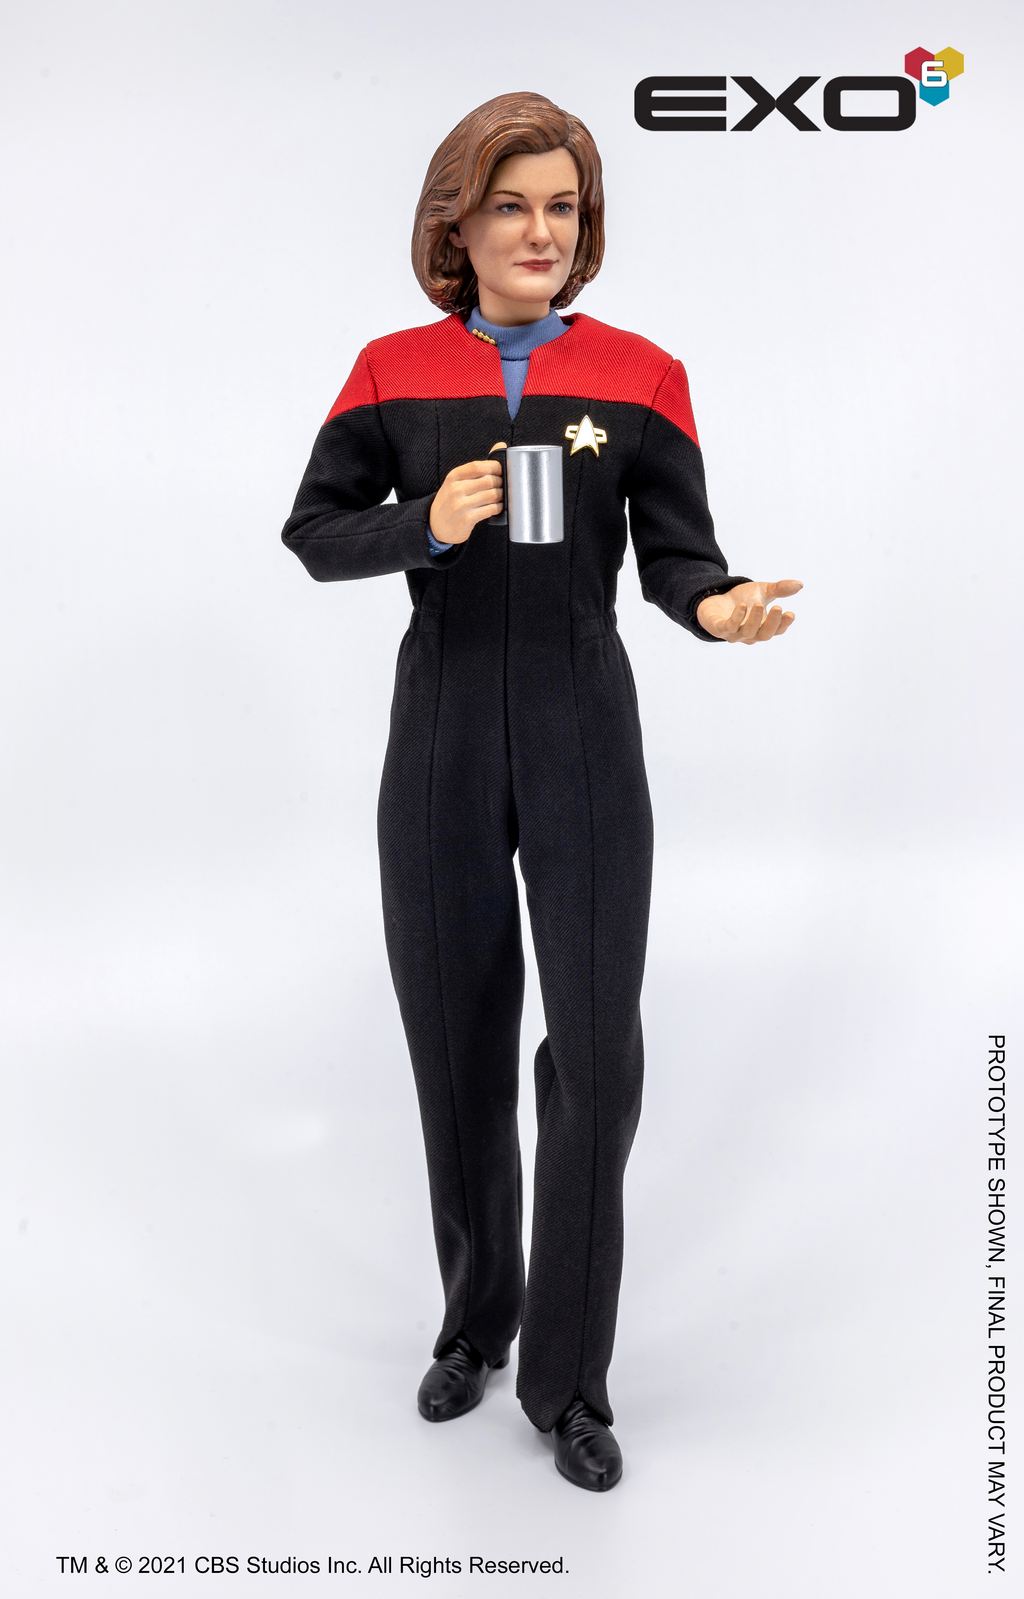 Liens d'armures et des figurines en impression 3D du jeu Star Trek Online - Page 4 Exo6ex11